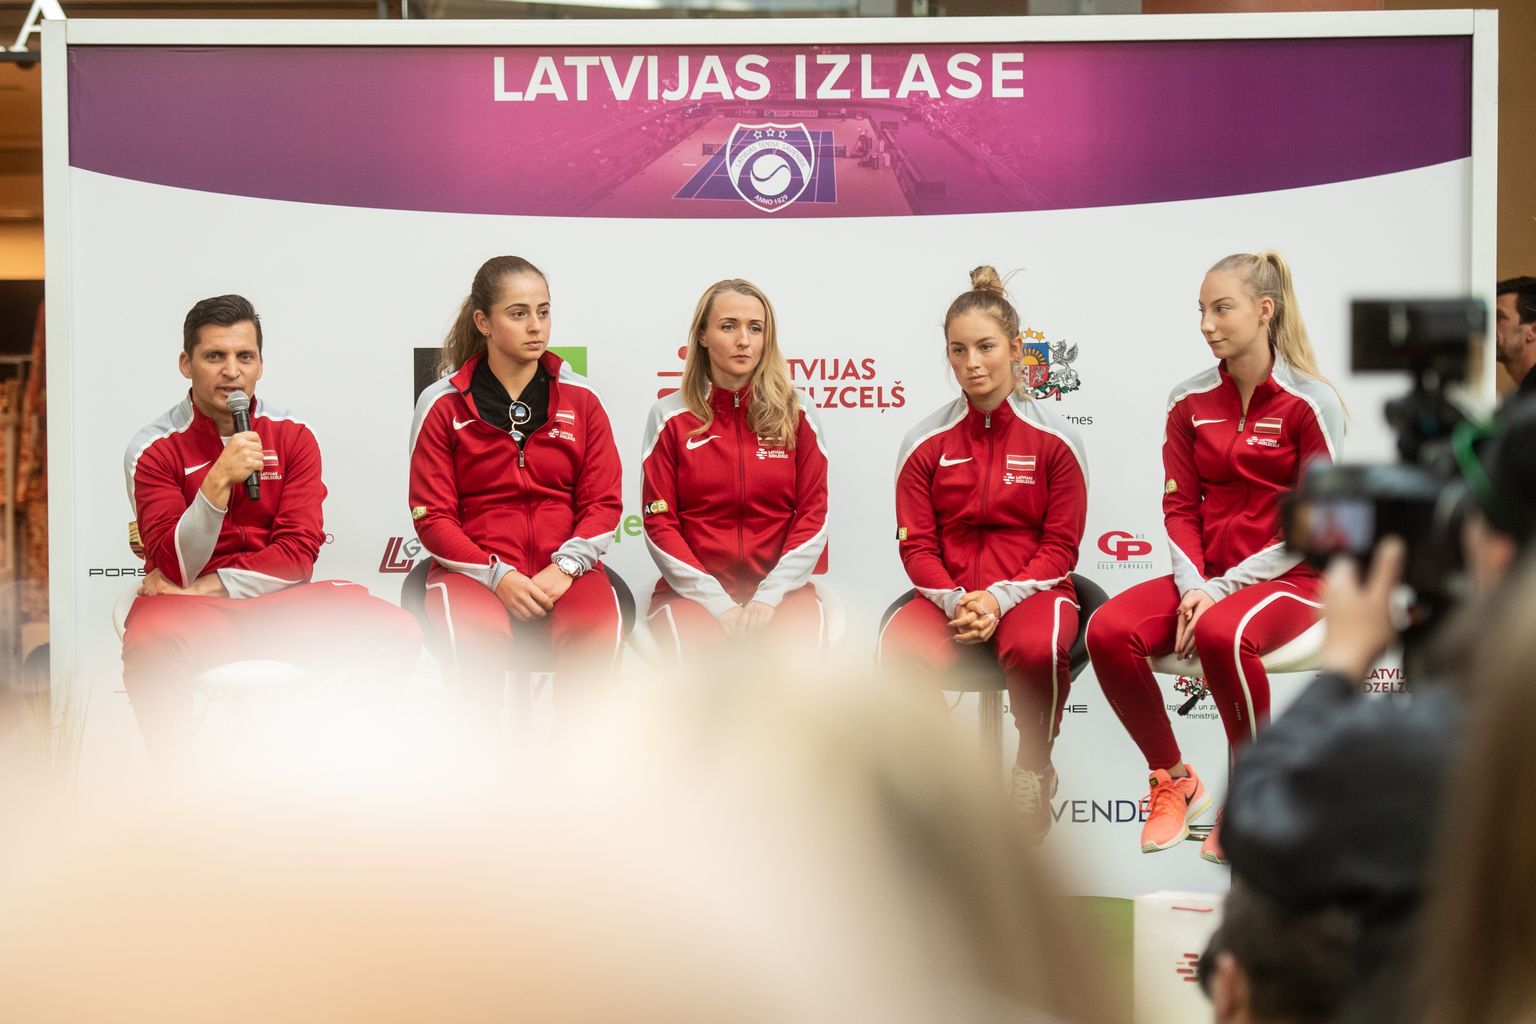 Latvijas sieviešu tenisa izlase - Adrians Žguns, Aļona Ostapenko, Diāna Marcinkēviča, Daniela Vismane, Patrīcija Špaka